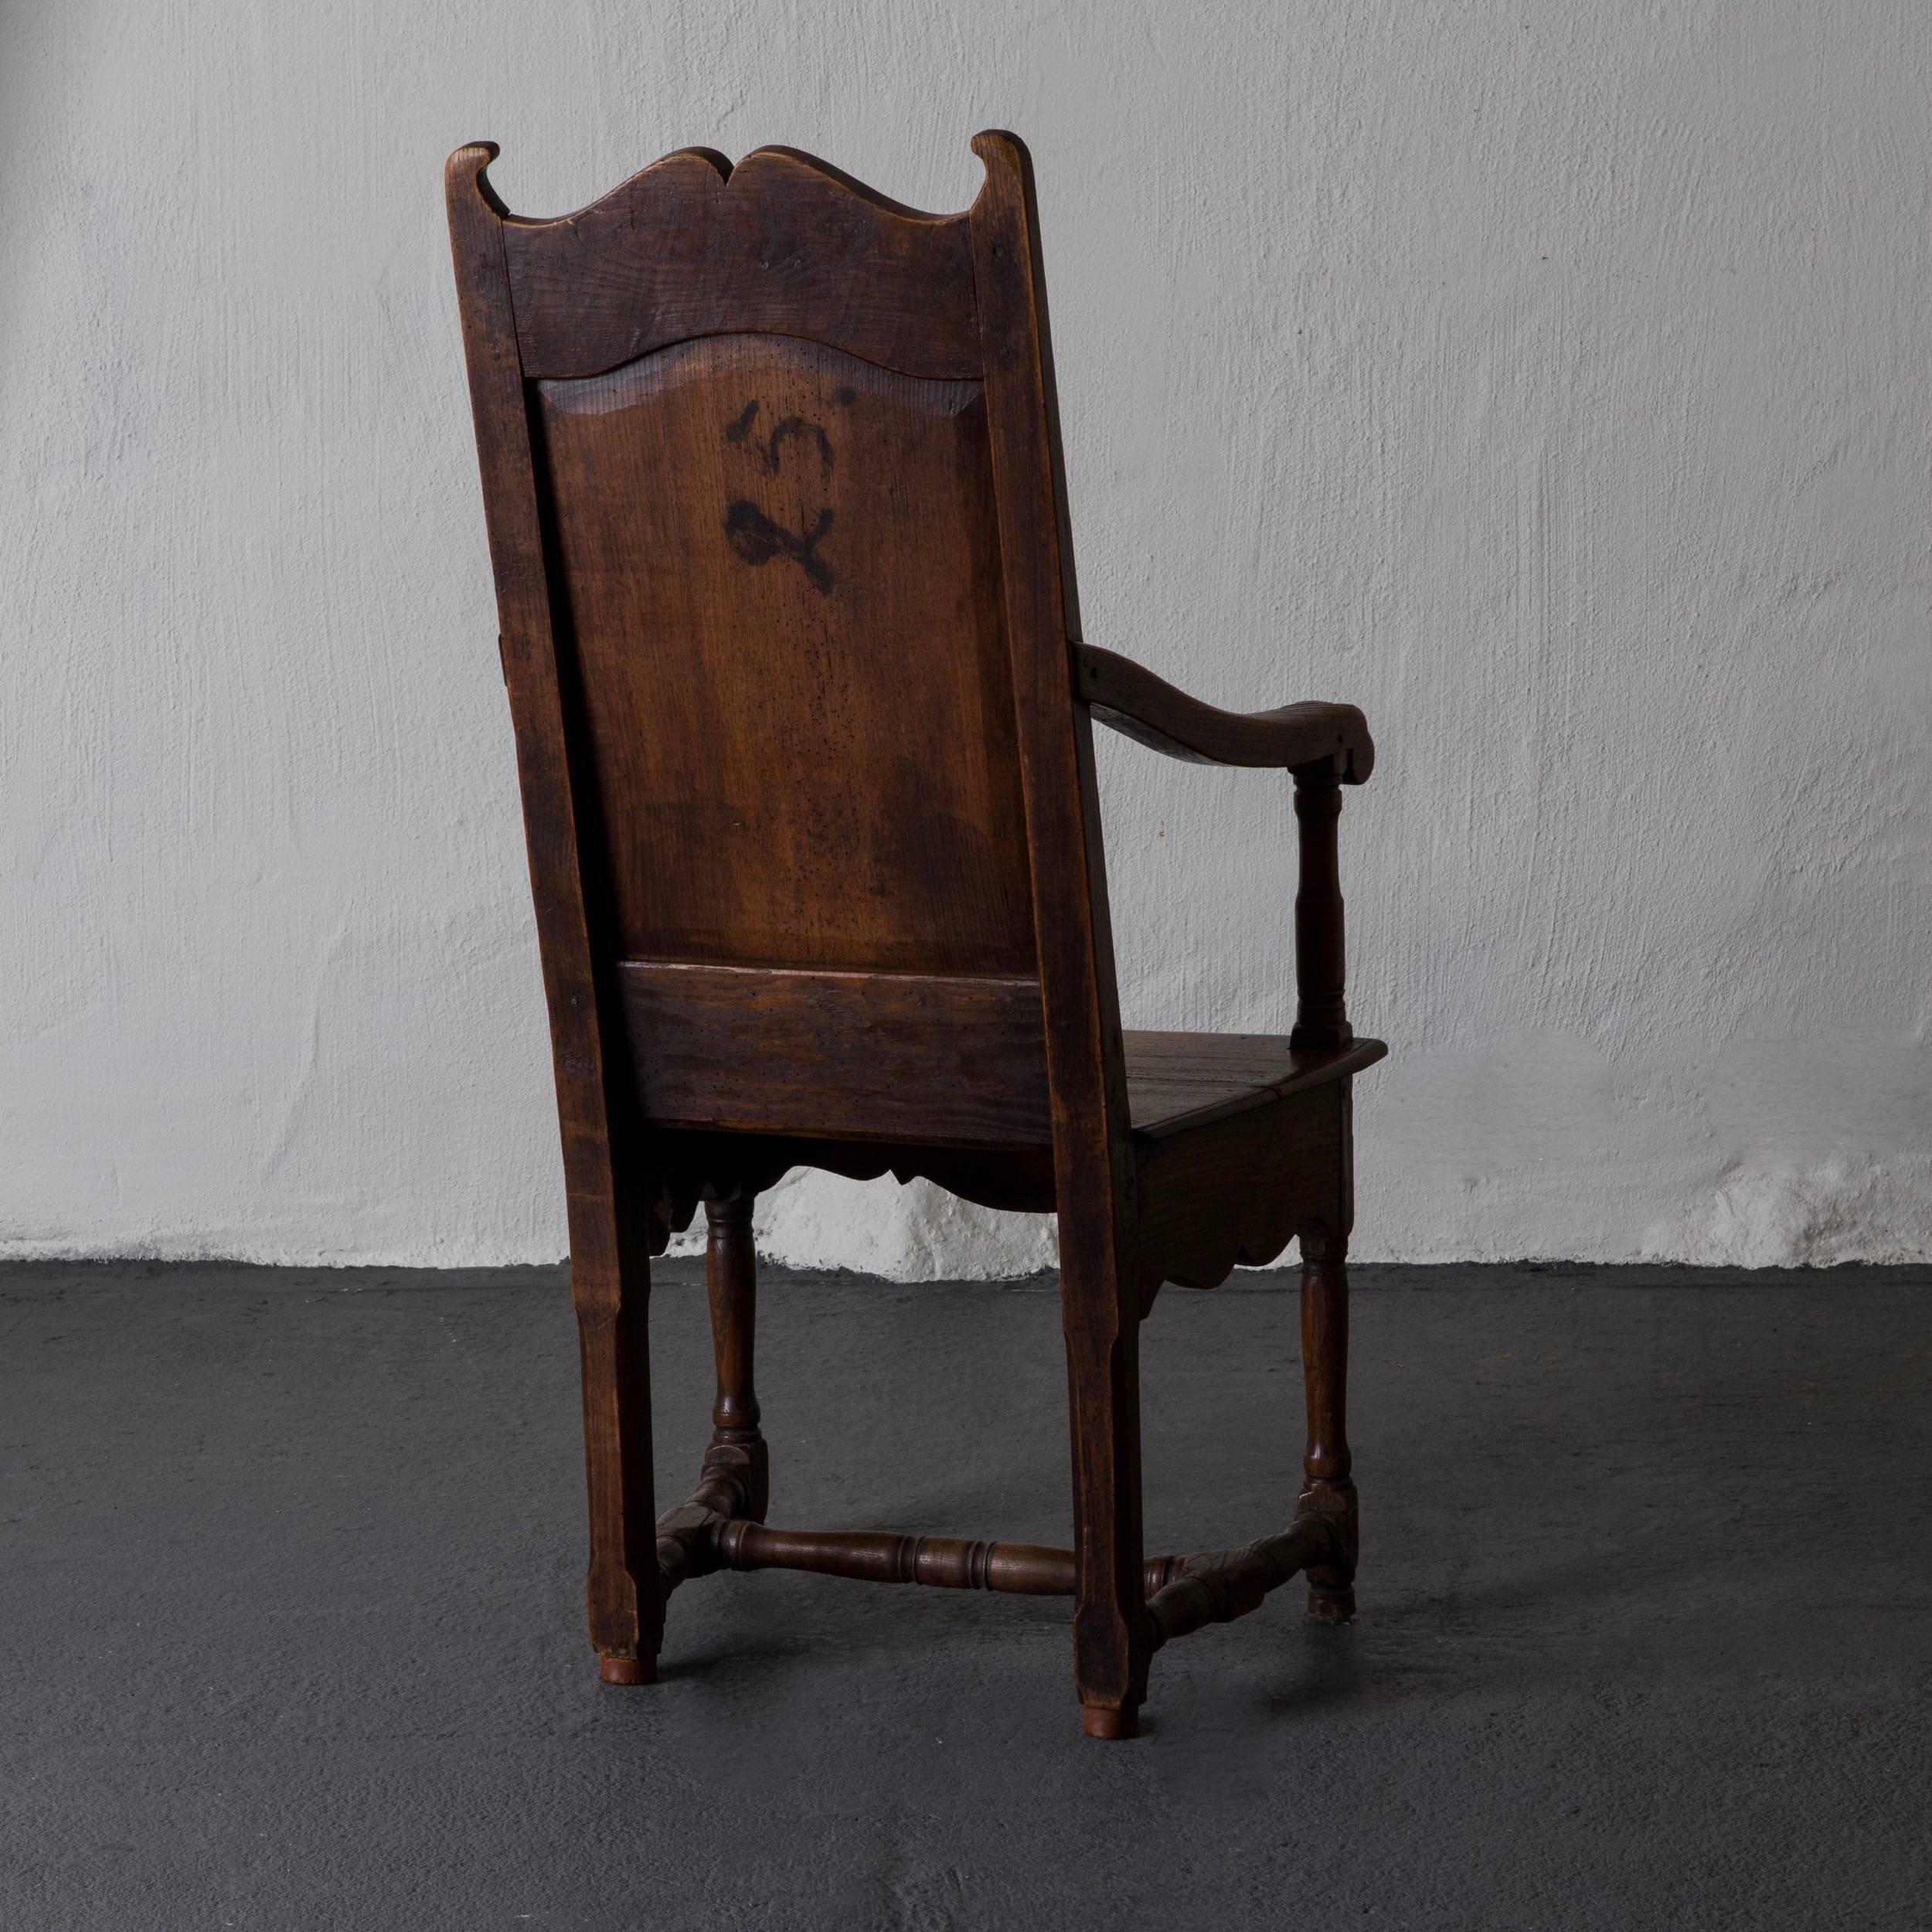 Ein Sessel aus dem späten Barock im 18. Jahrhundert in Südeuropa, wahrscheinlich in Spanien. Rahmen aus Eichenholz in Originalausführung.

